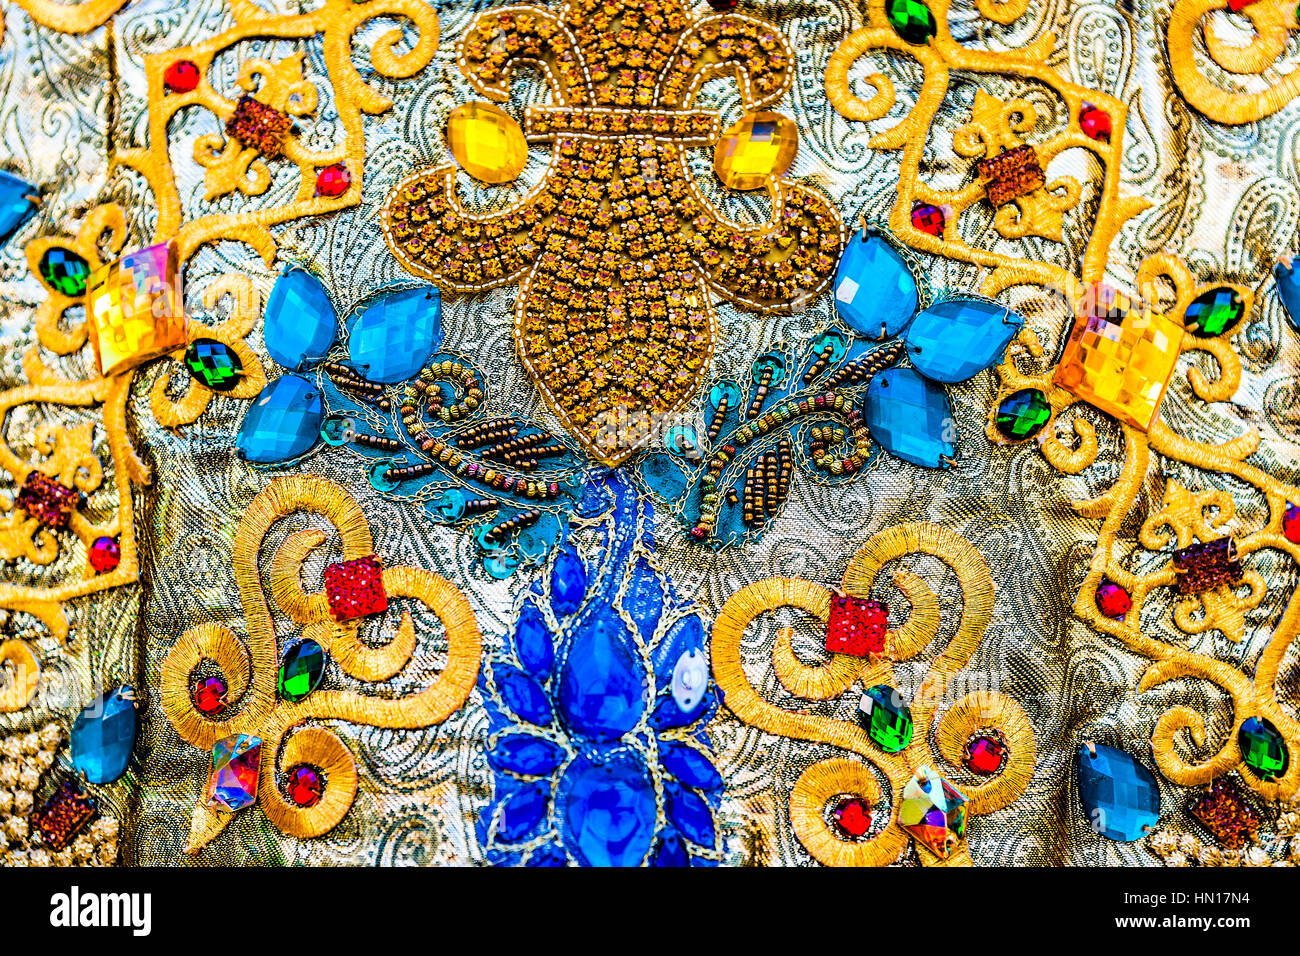 Imitation de le tsar de Russie très robe ornée de pierres précieuses, de bijoux et d'or. Reconstruction de vêtements historiques. Banque D'Images